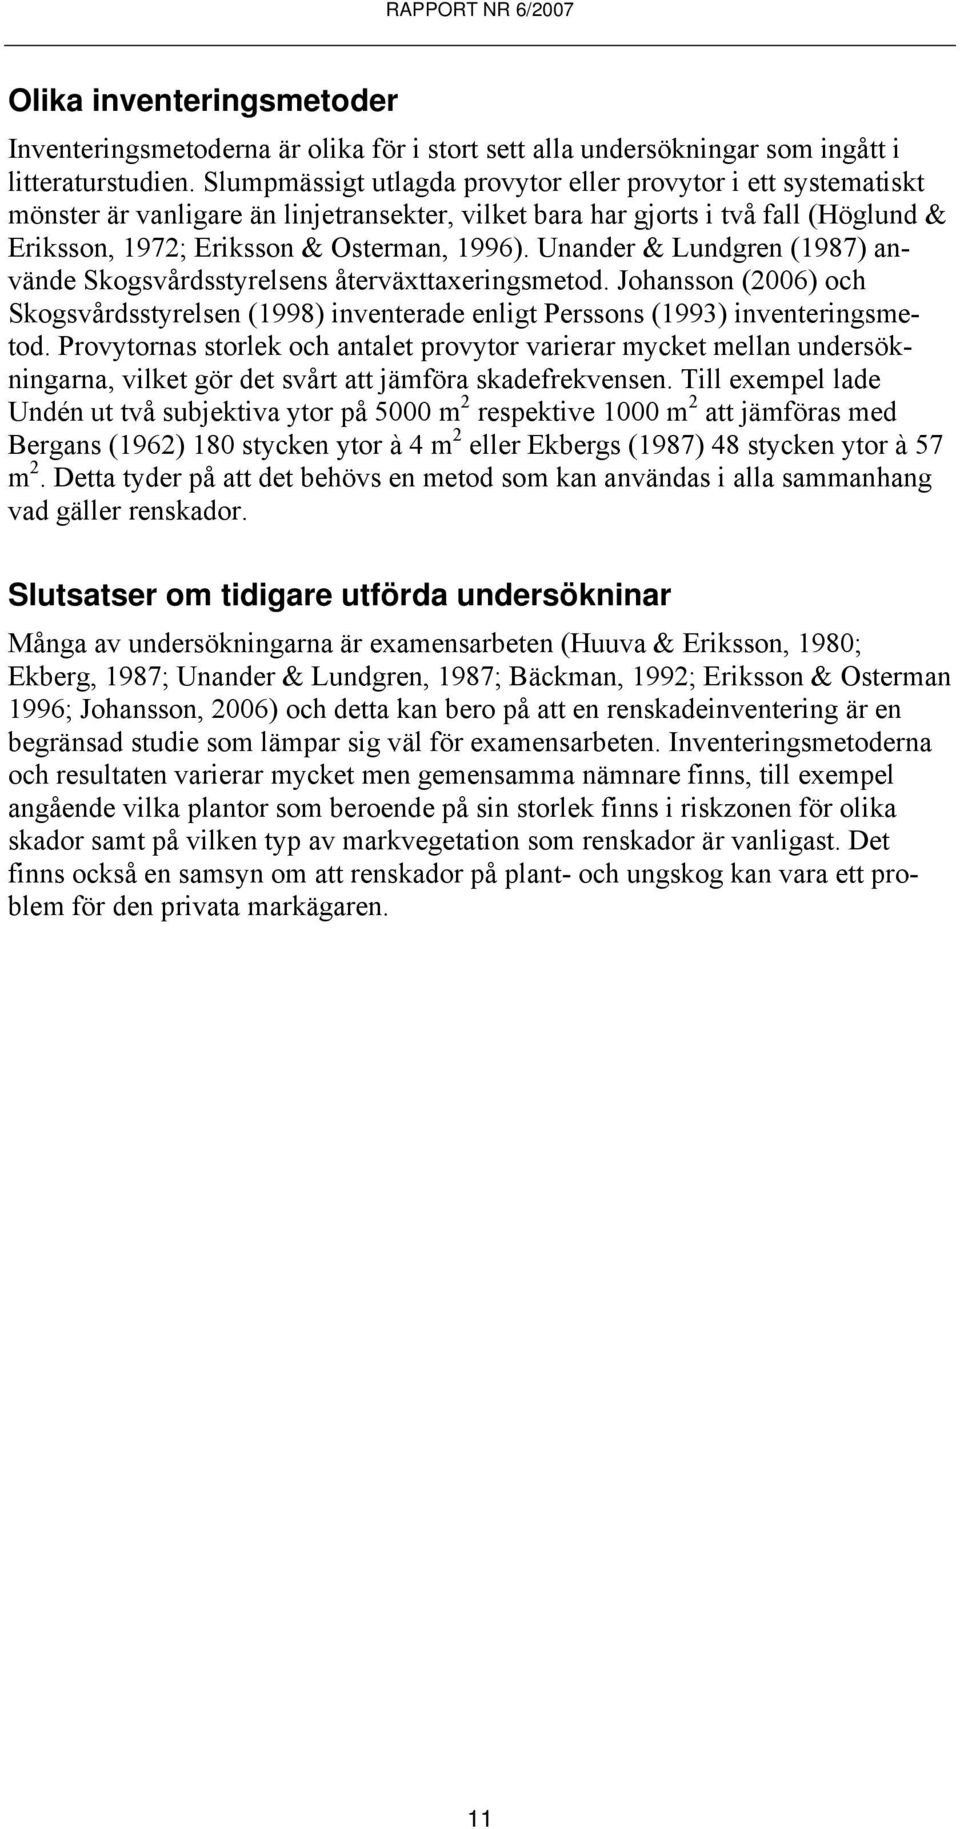 Unander & Lundgren (1987) använde Skogsvårdsstyrelsens återväxttaxeringsmetod. Johansson (2006) och Skogsvårdsstyrelsen (1998) inventerade enligt Perssons (1993) inventeringsmetod.